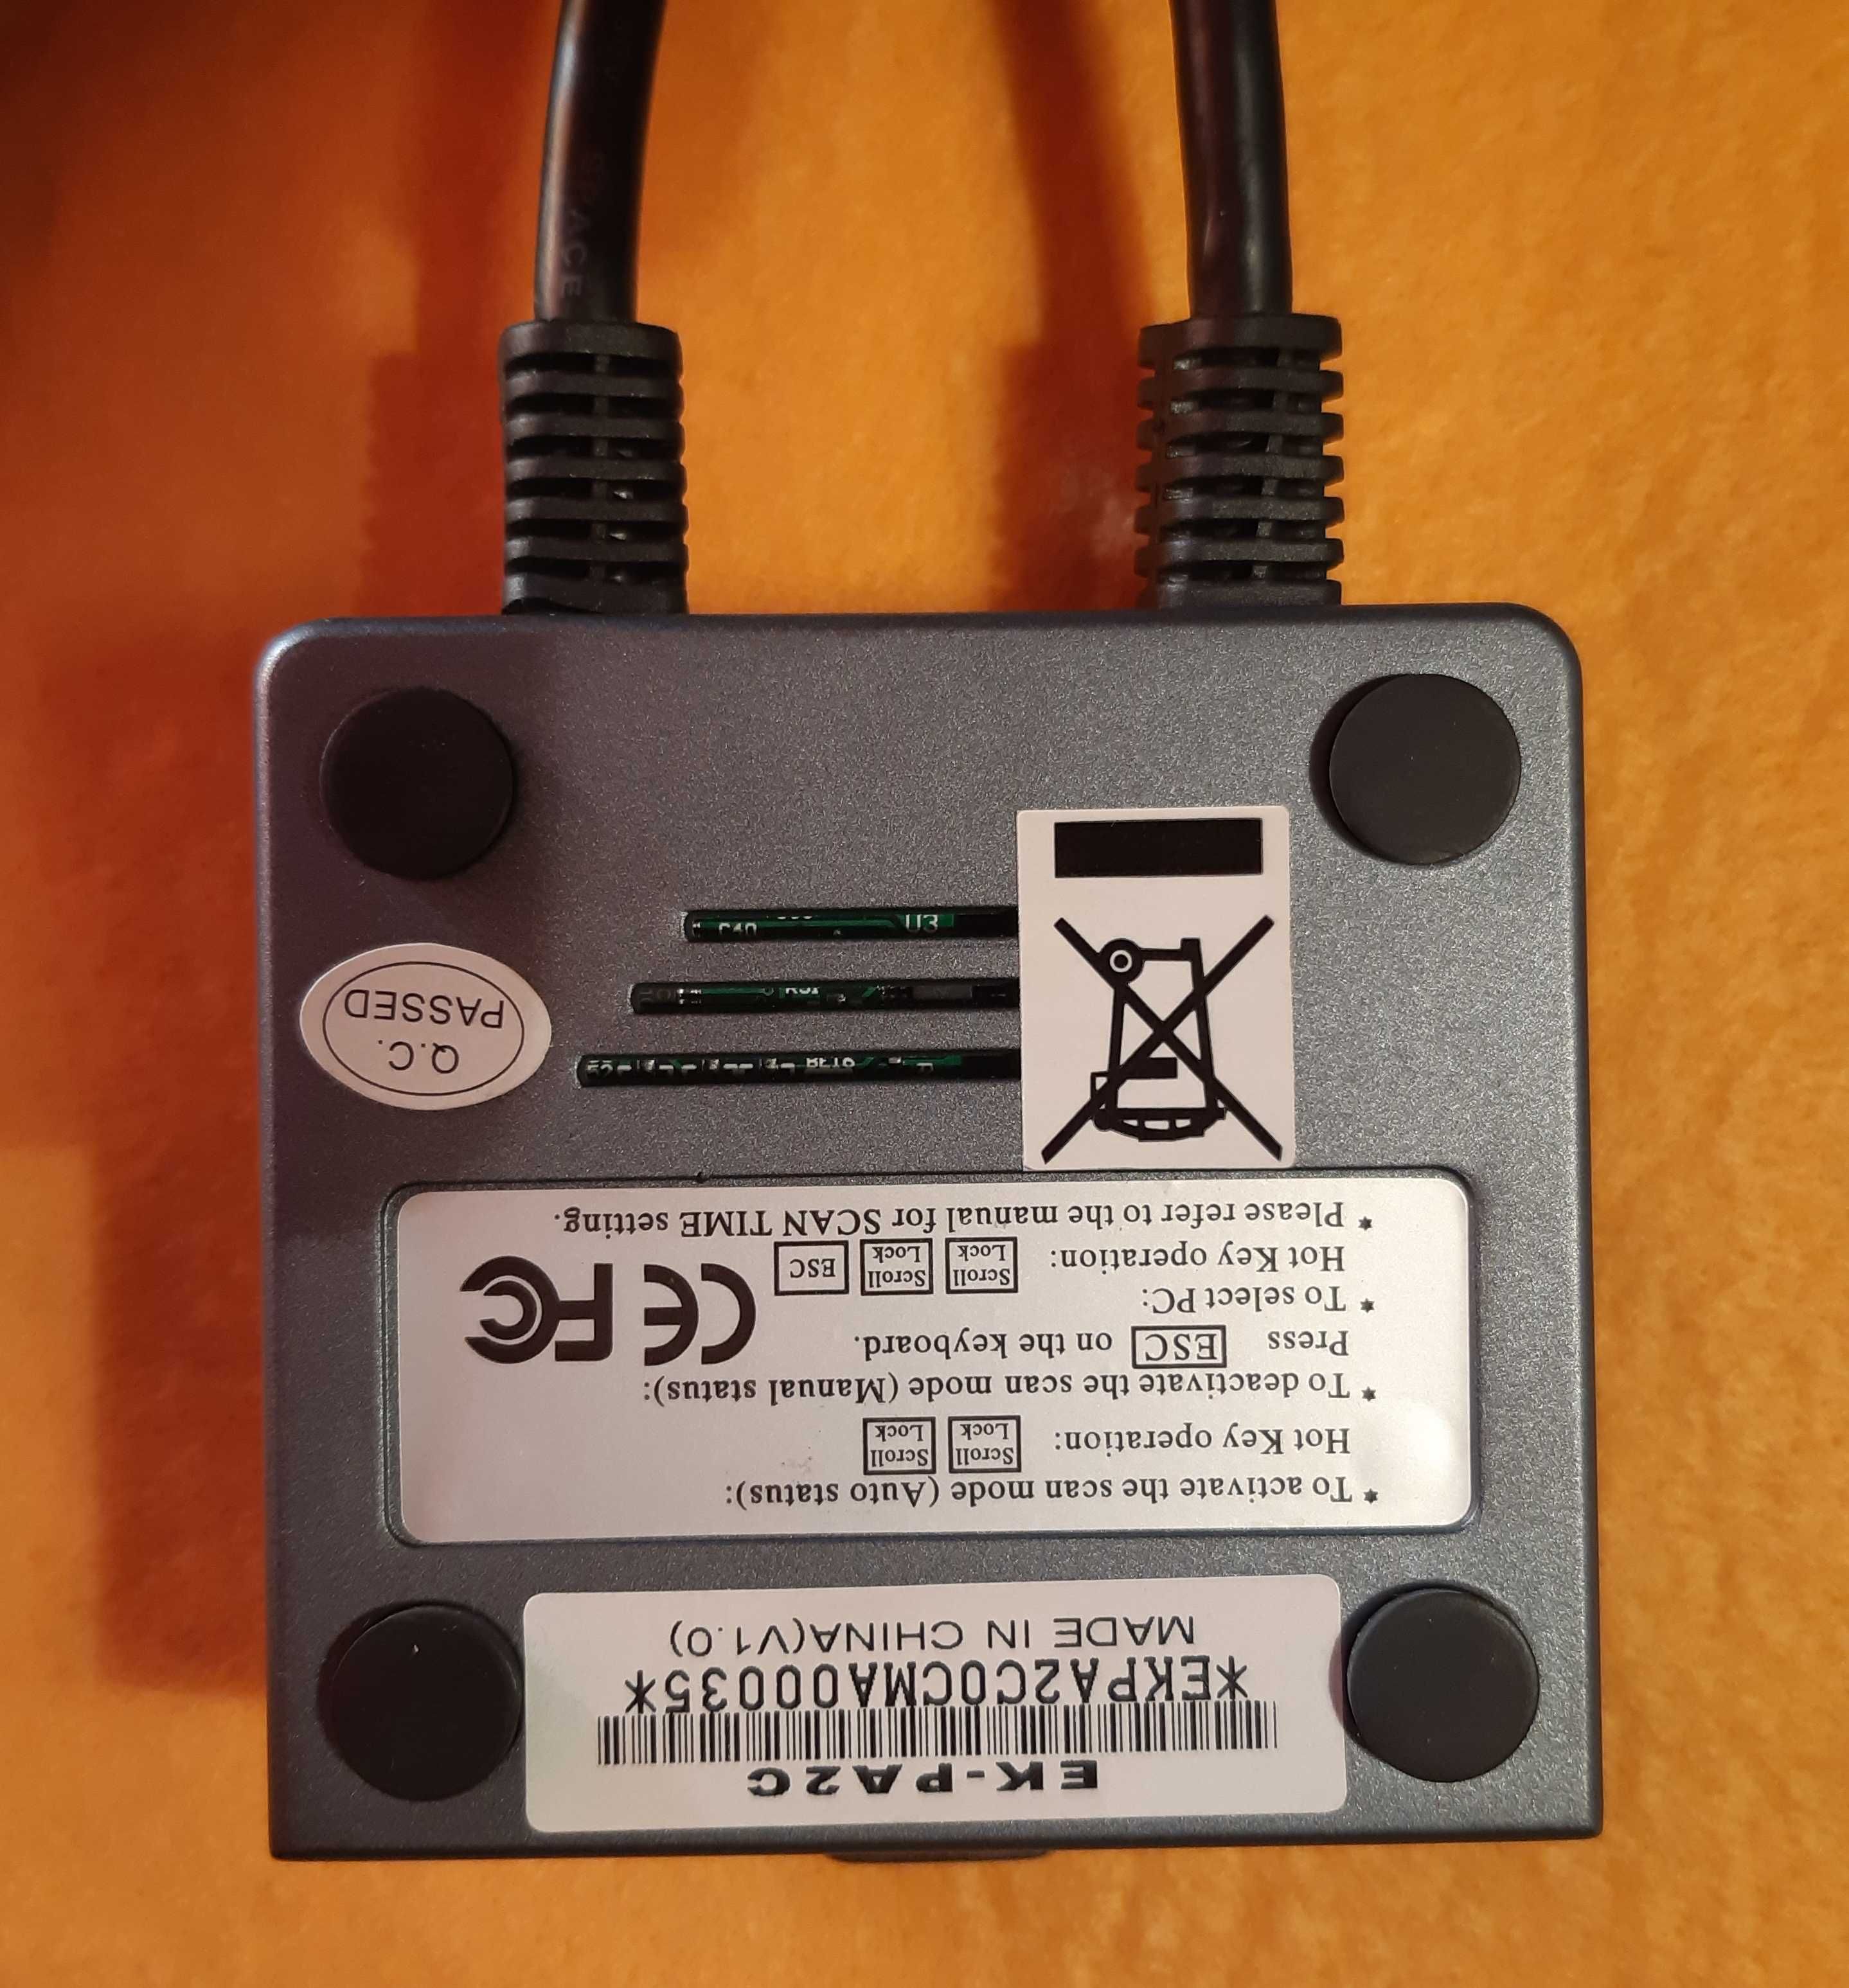 Switch KVM - Edimax PS2 , adaptor usb la PS2